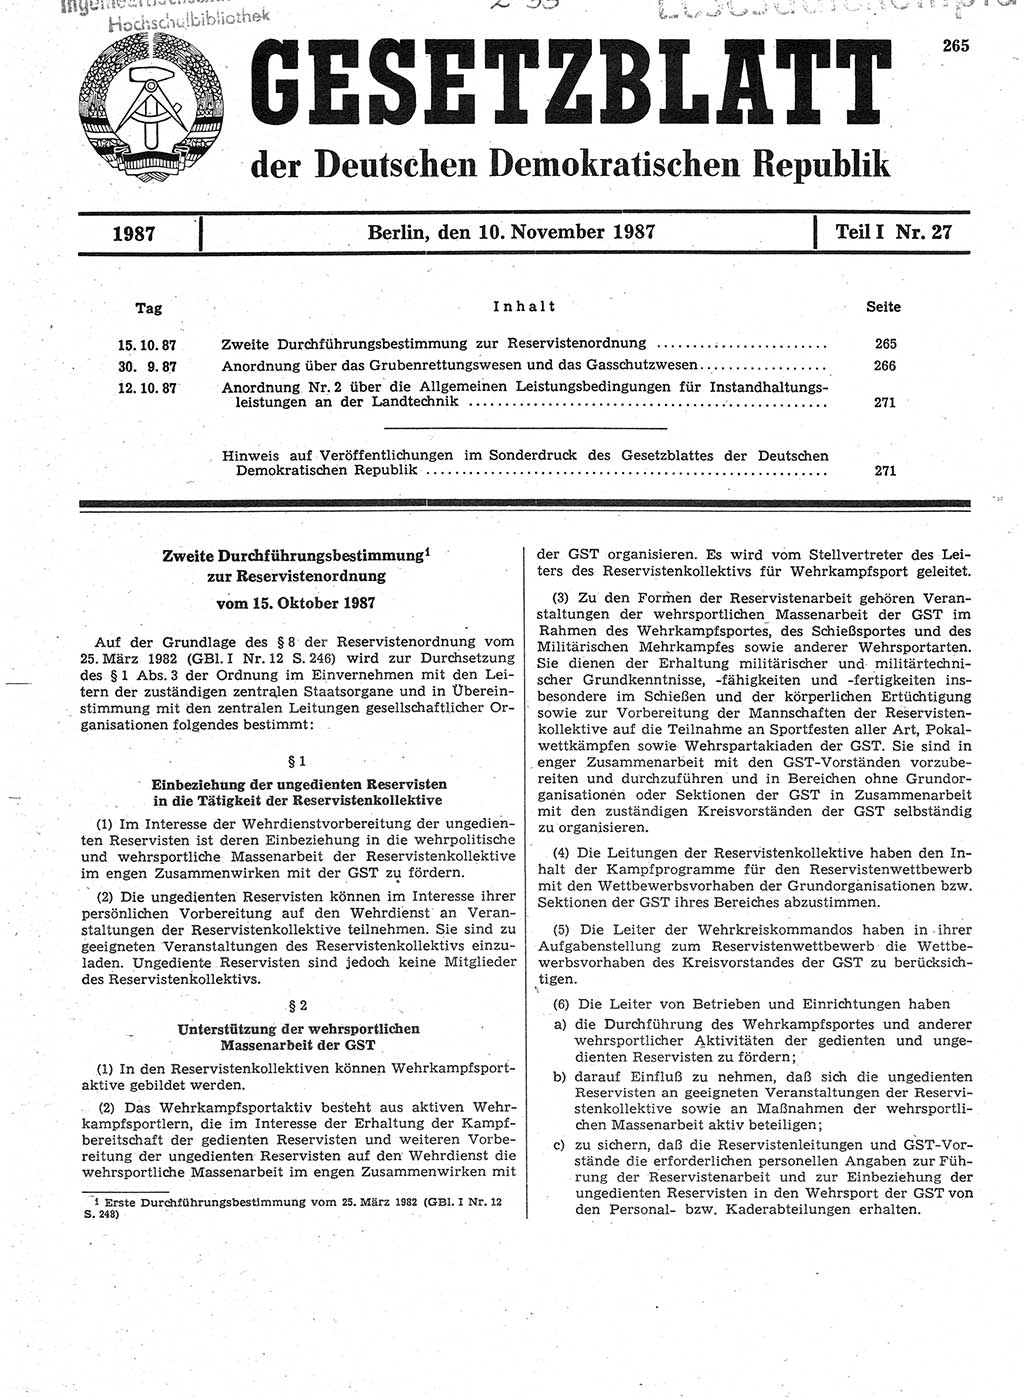 Gesetzblatt (GBl.) der Deutschen Demokratischen Republik (DDR) Teil Ⅰ 1987, Seite 265 (GBl. DDR Ⅰ 1987, S. 265)